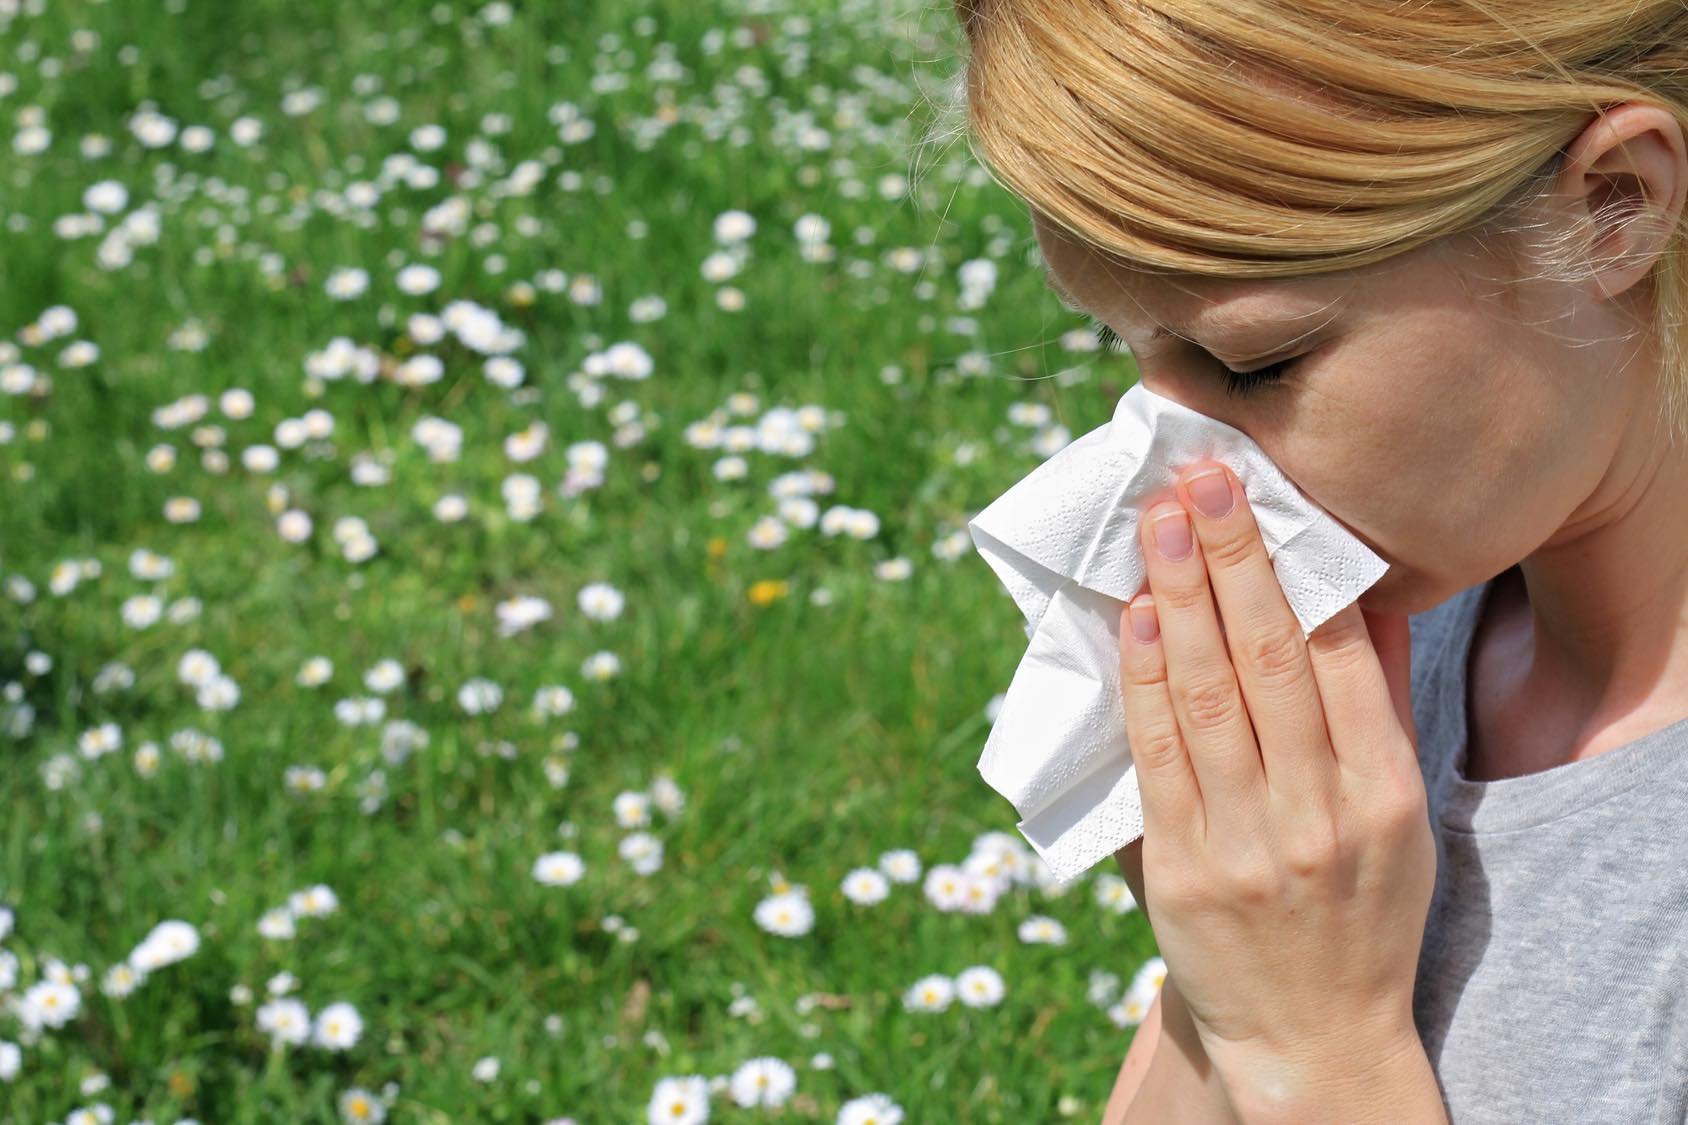 İklim değişikliği, alerjinin şiddetini ve görülme sıklığını artırıyor